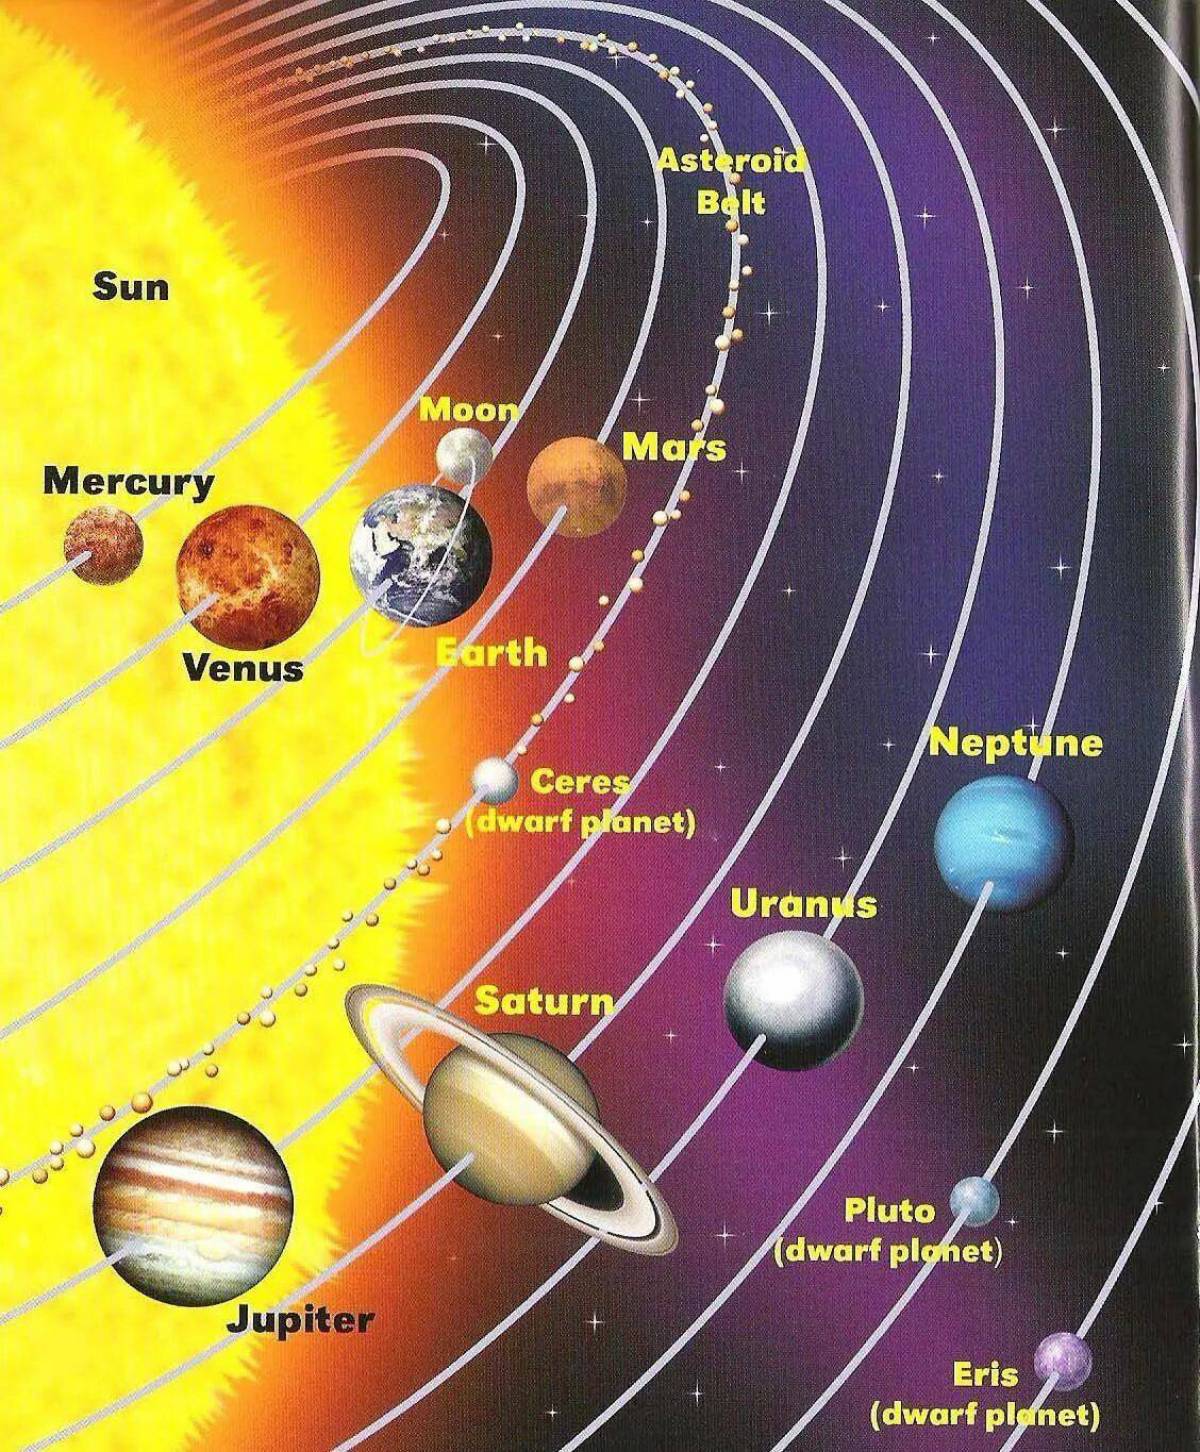 Сколько планет в солнечной системе земли. Планеты солнечной системы по порядку от солнца с названиями. Планеты солнечной системы по порядку от солнца с названиями схема. Название планет солнечной системы по порядку. Порядок планет в солнечной системе от солнца.